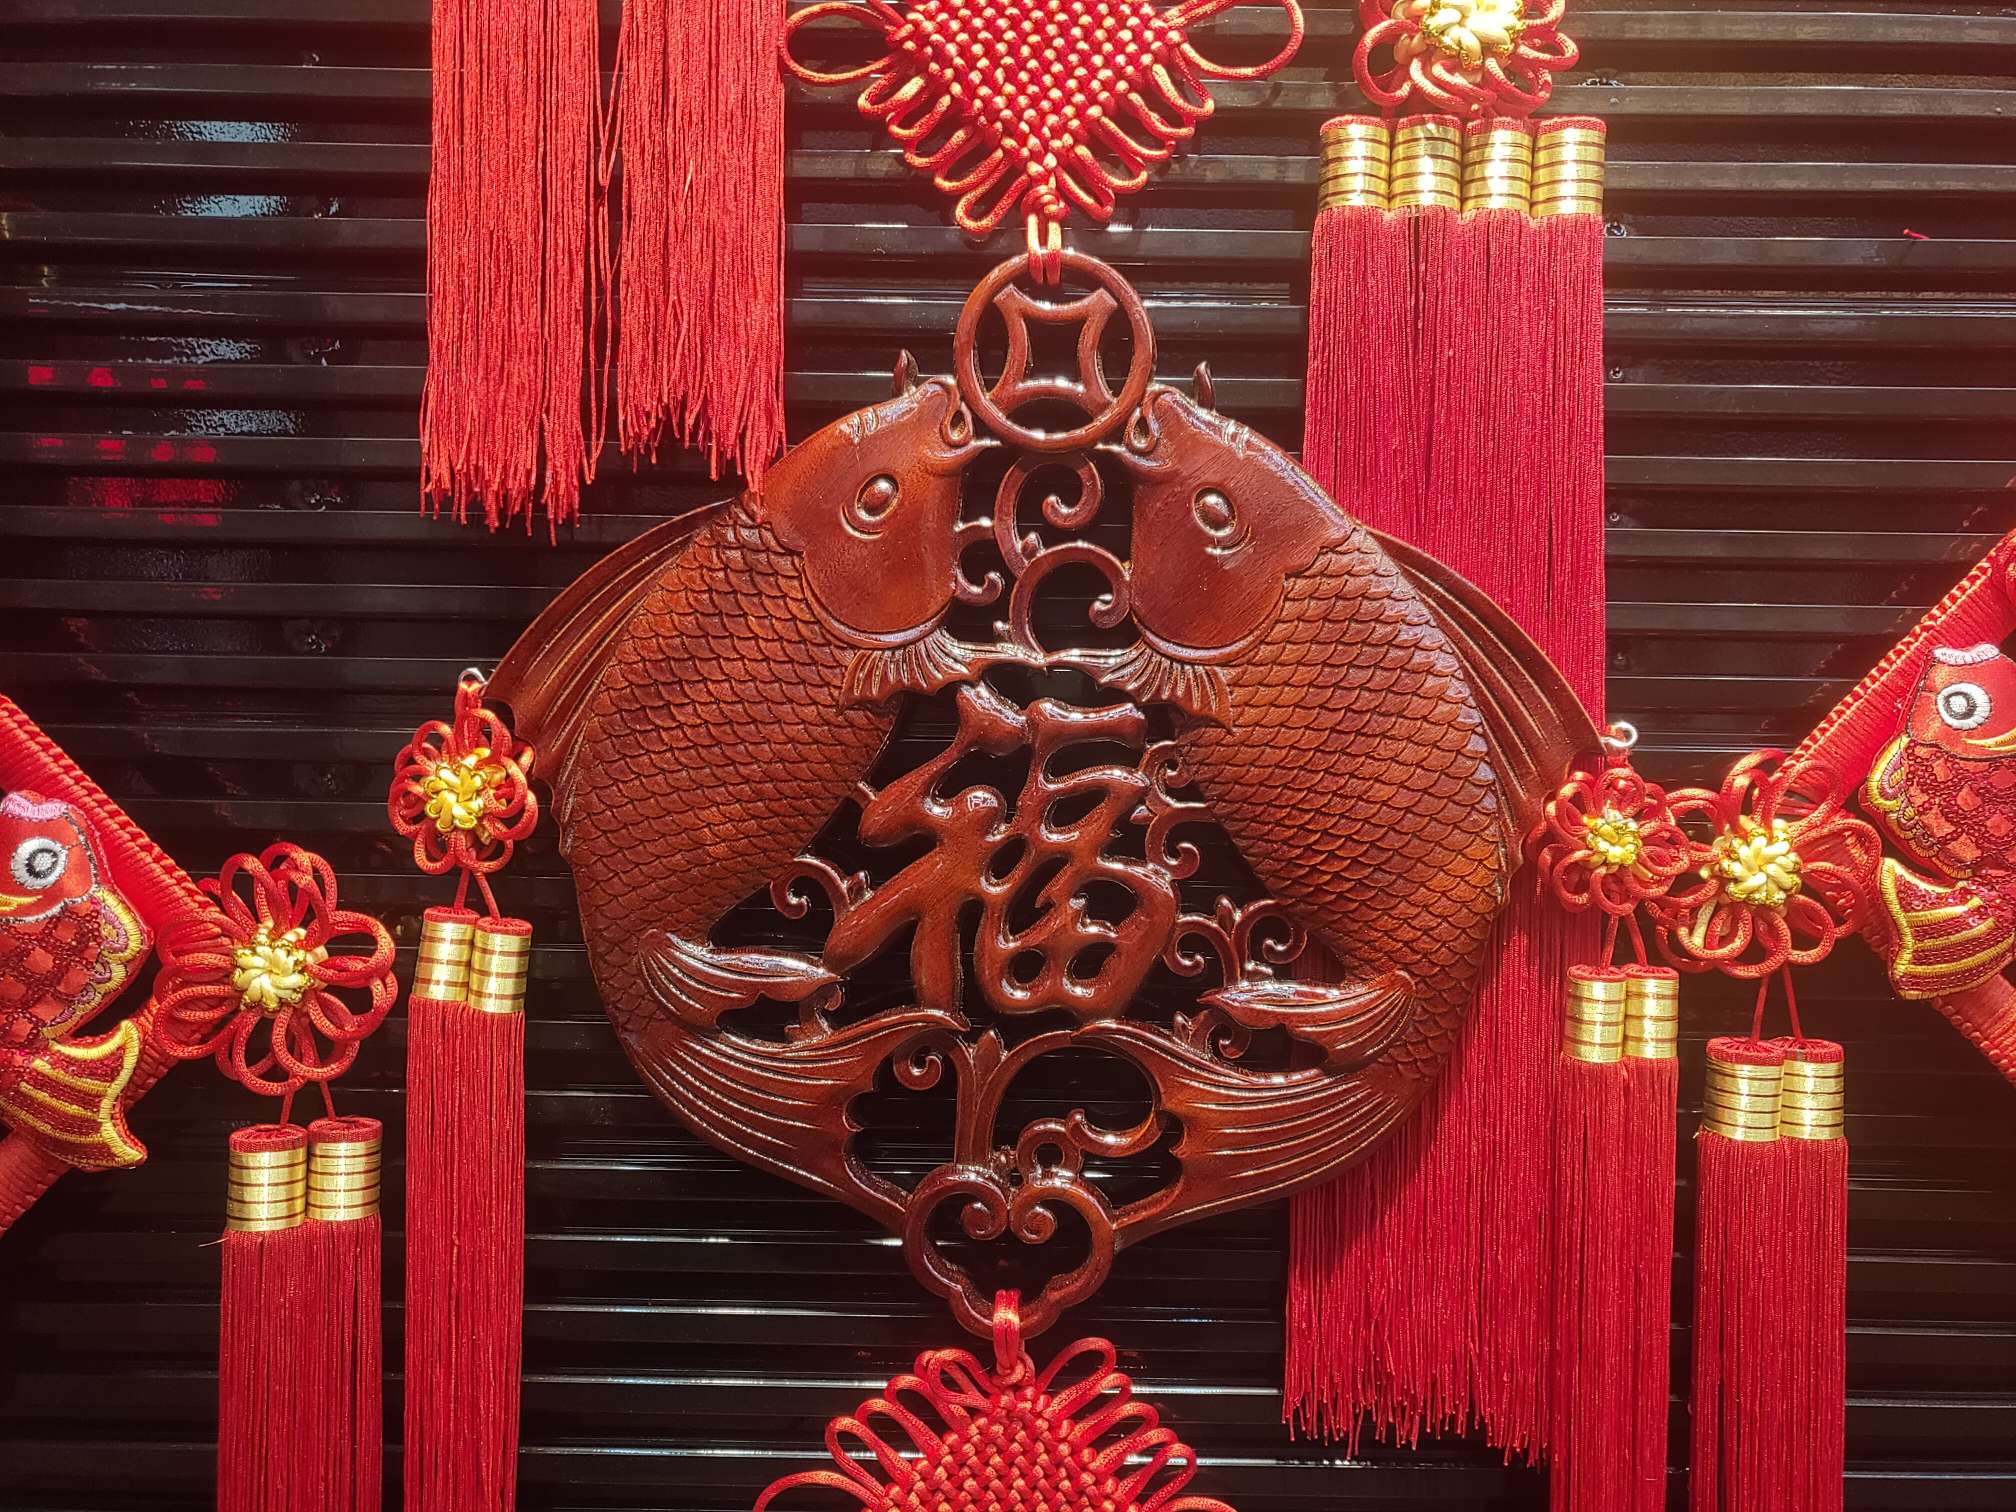 40#方形木雕51春节喜庆用品节日用品红木精品图